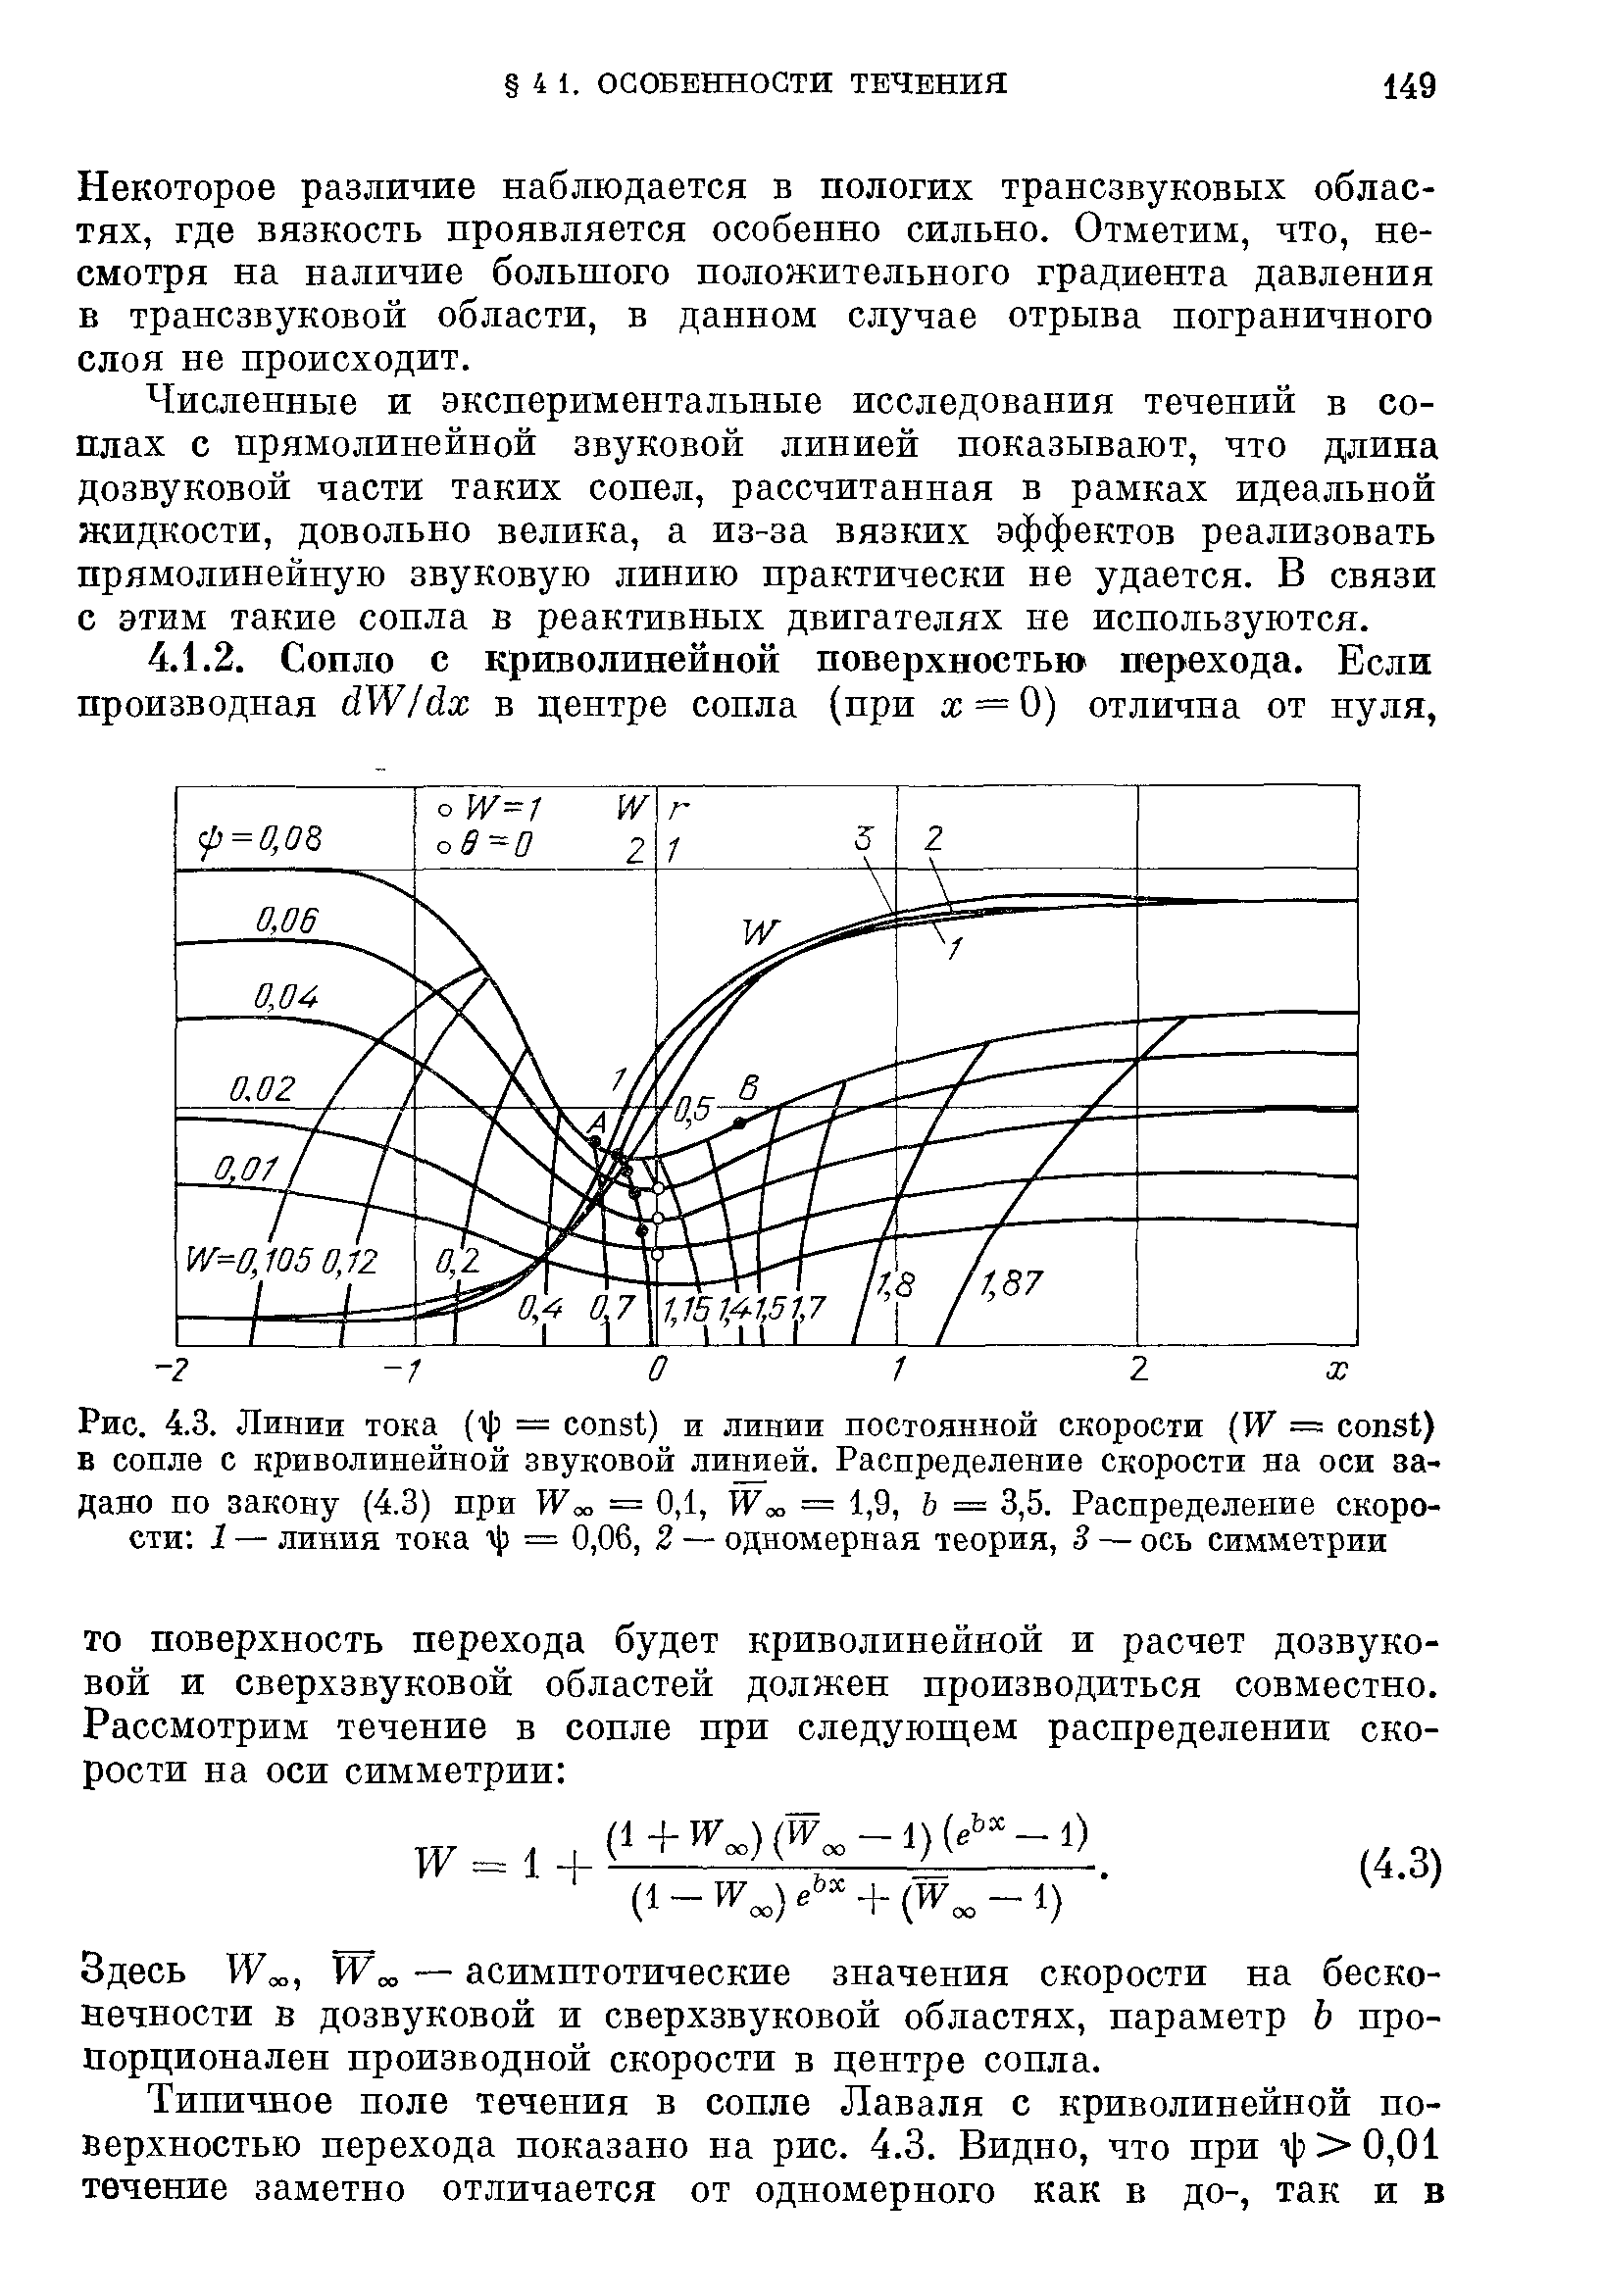 Здесь Woo, Woo — асимптотические значения скорости на бесконечности в дозвуковой и сверхзвуковой областях, параметр Ь пропорционален производной скорости в центре сопла.